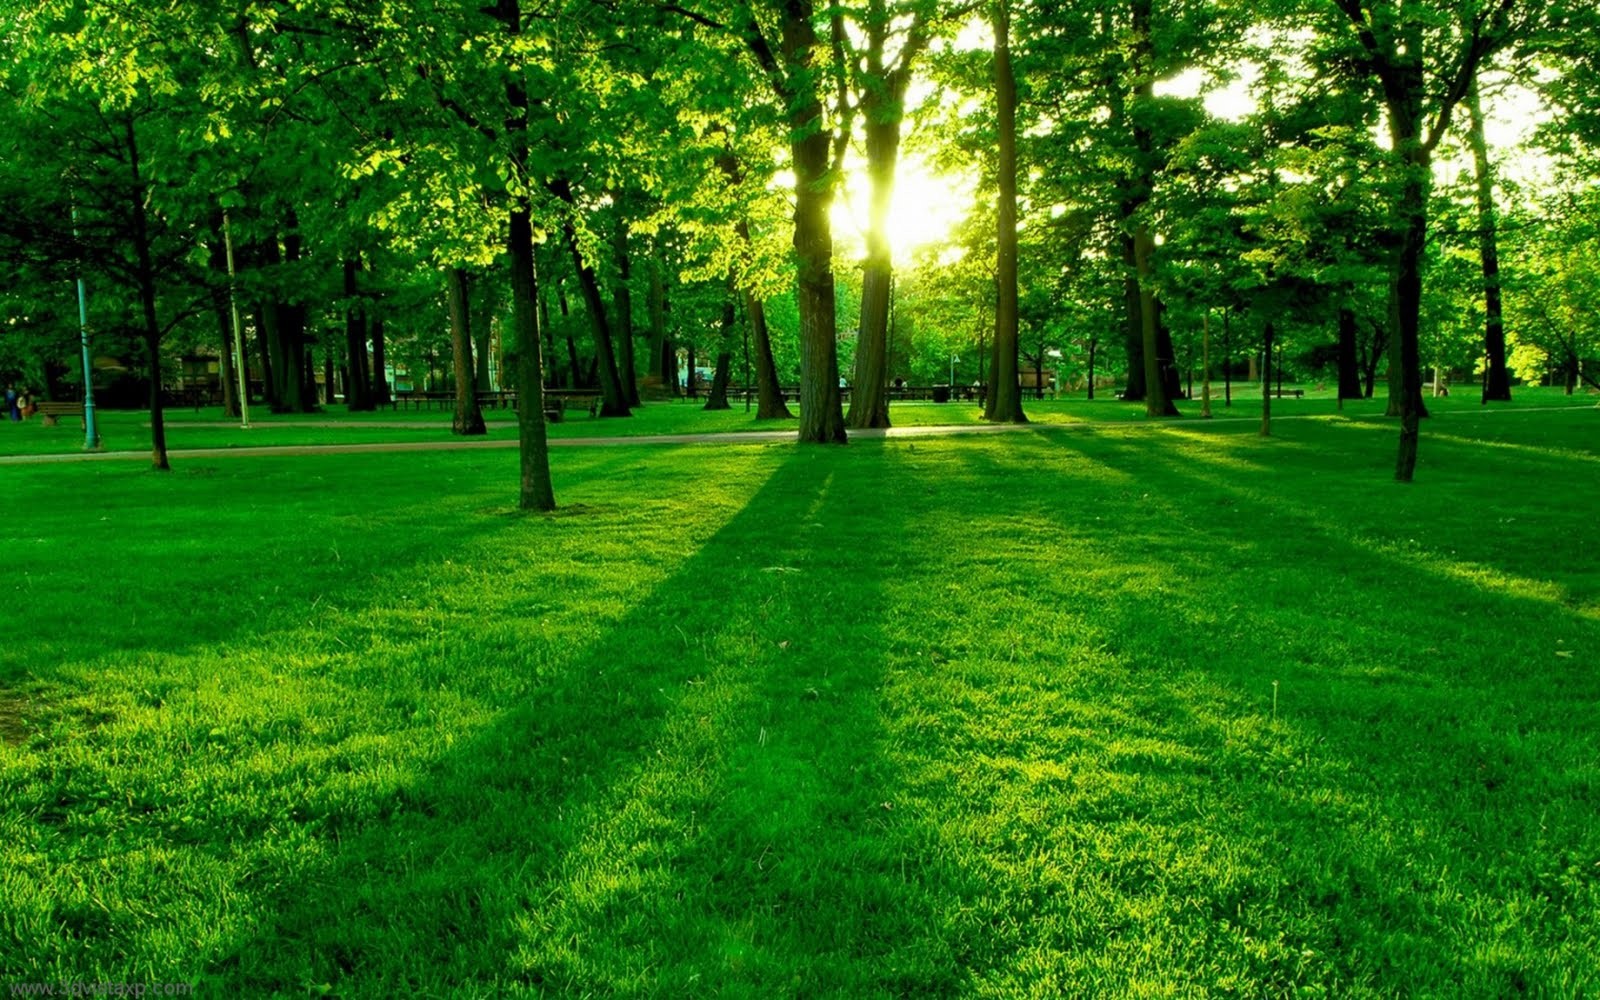 General 1600x1000 green grass park trees outdoors sunlight